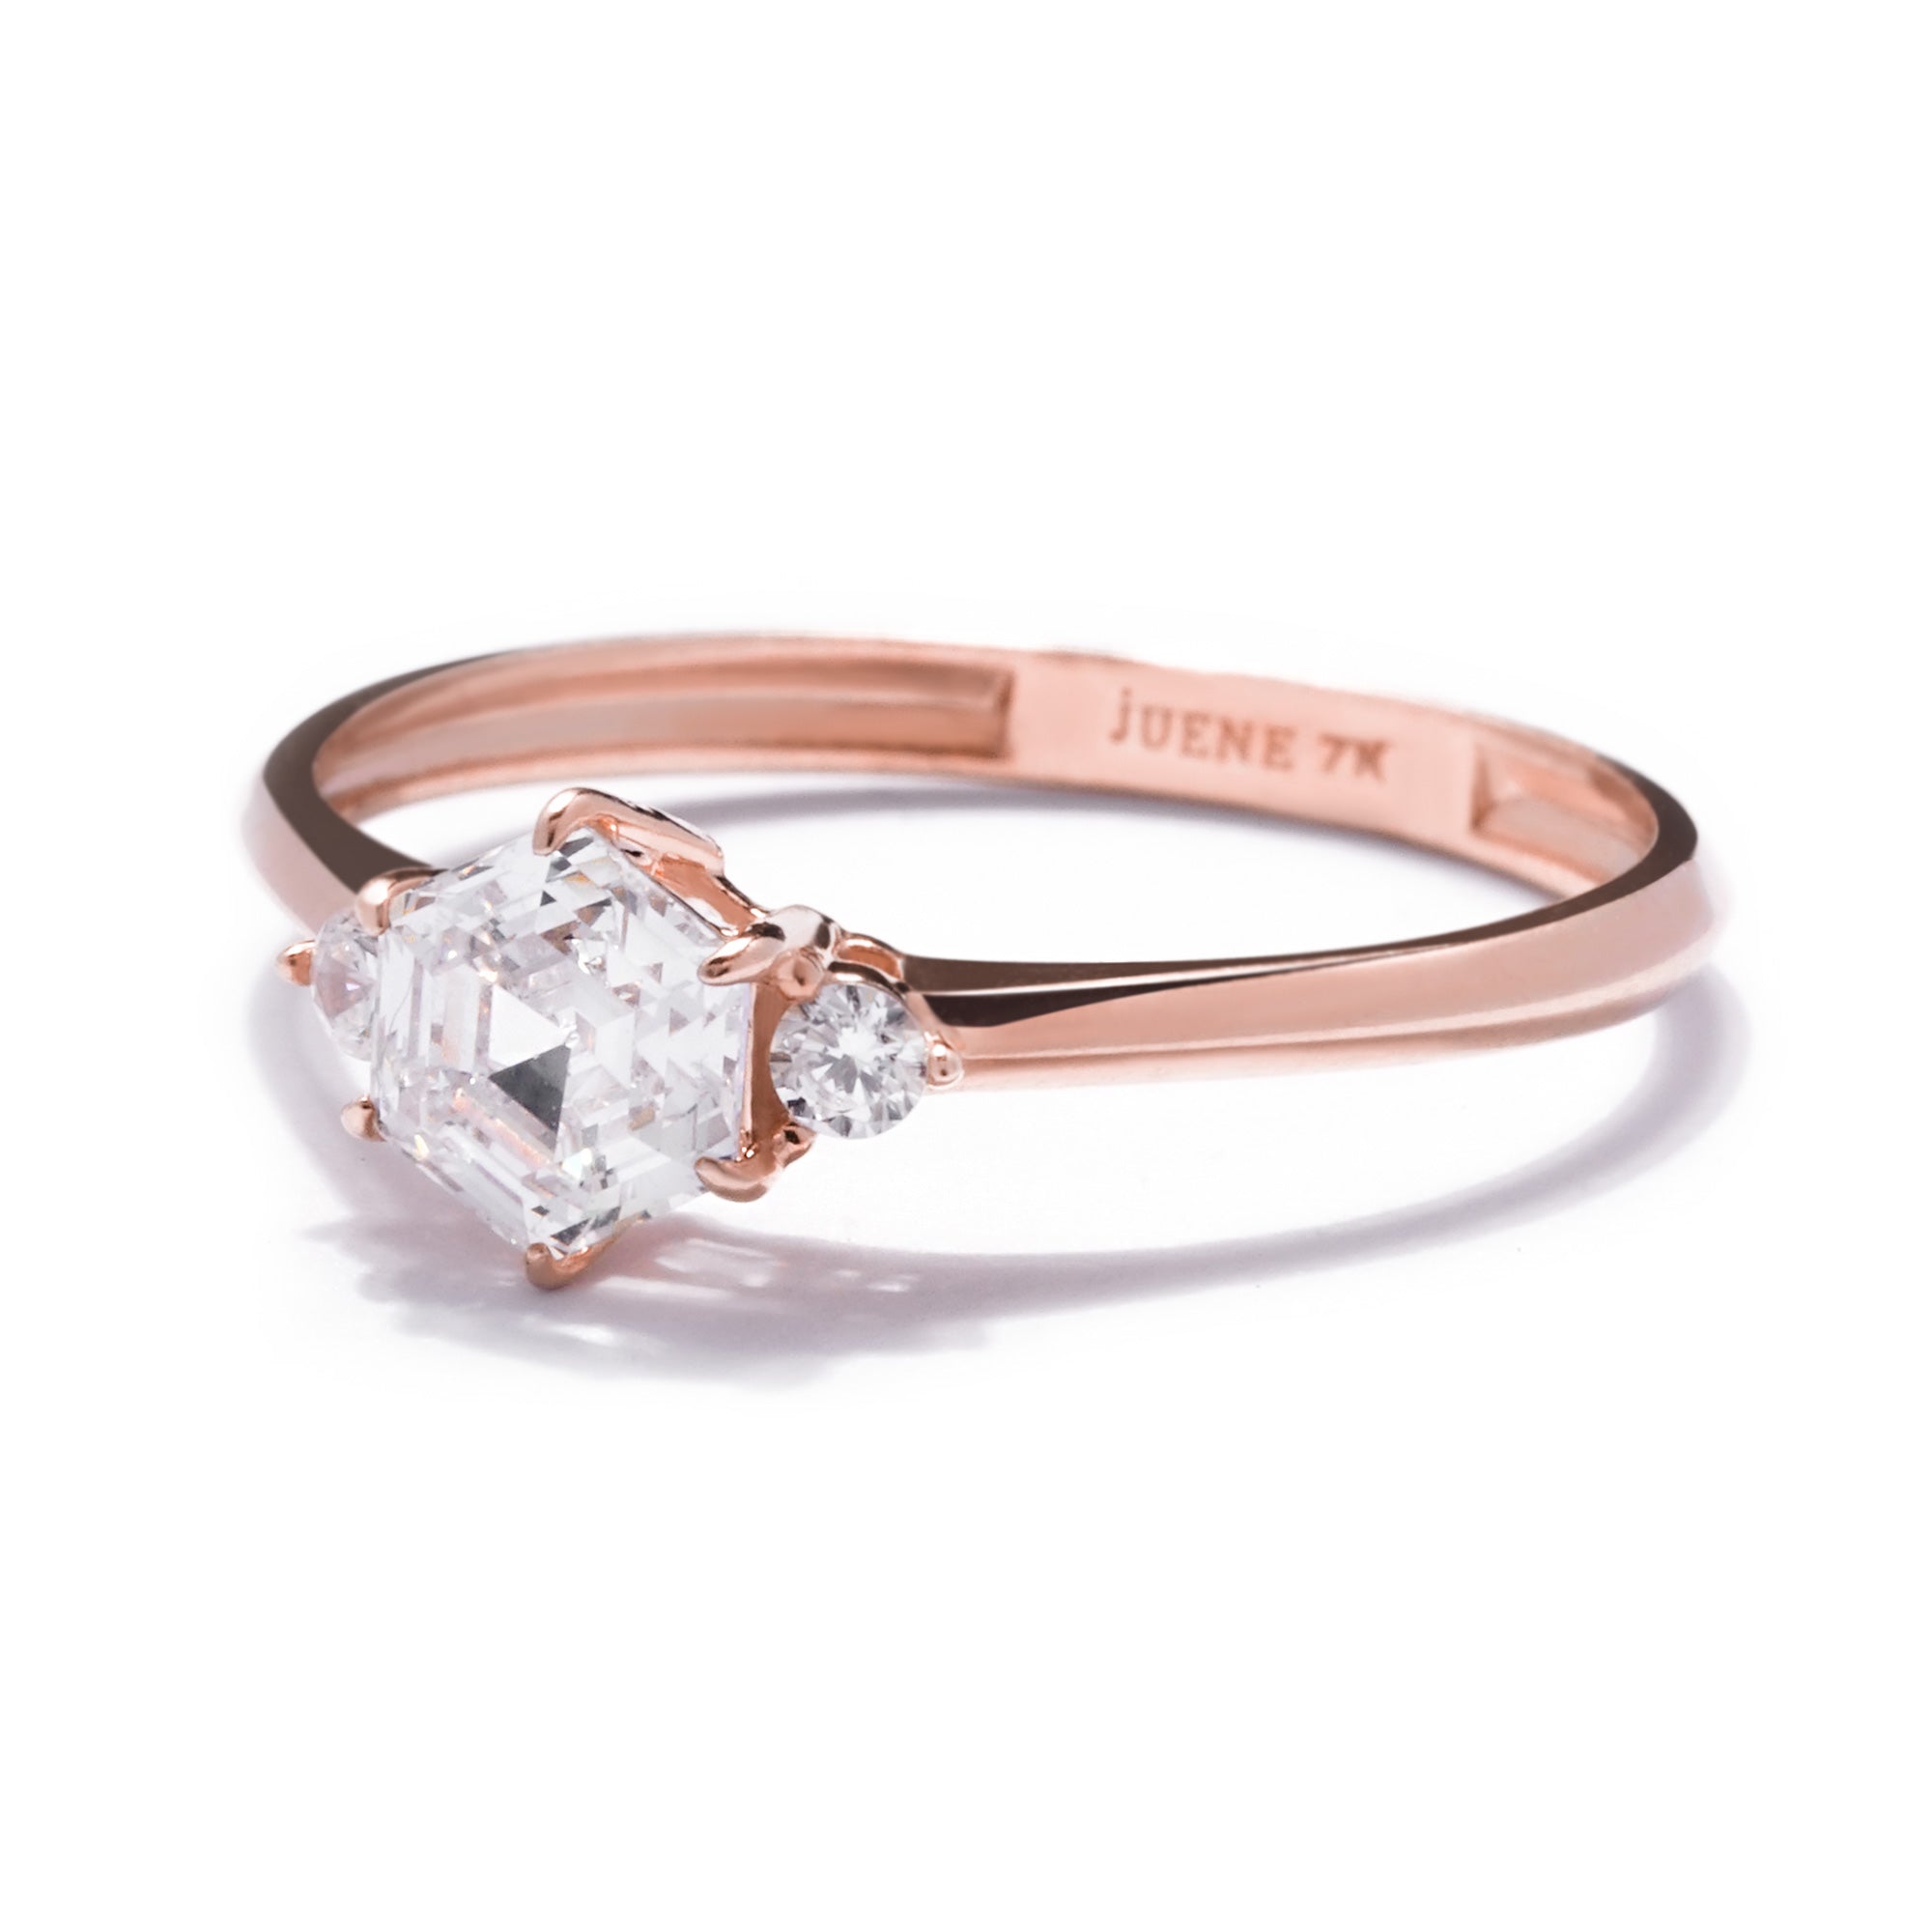 Elise Gold Ring - Sparkle & Joy - Juene Jewelry